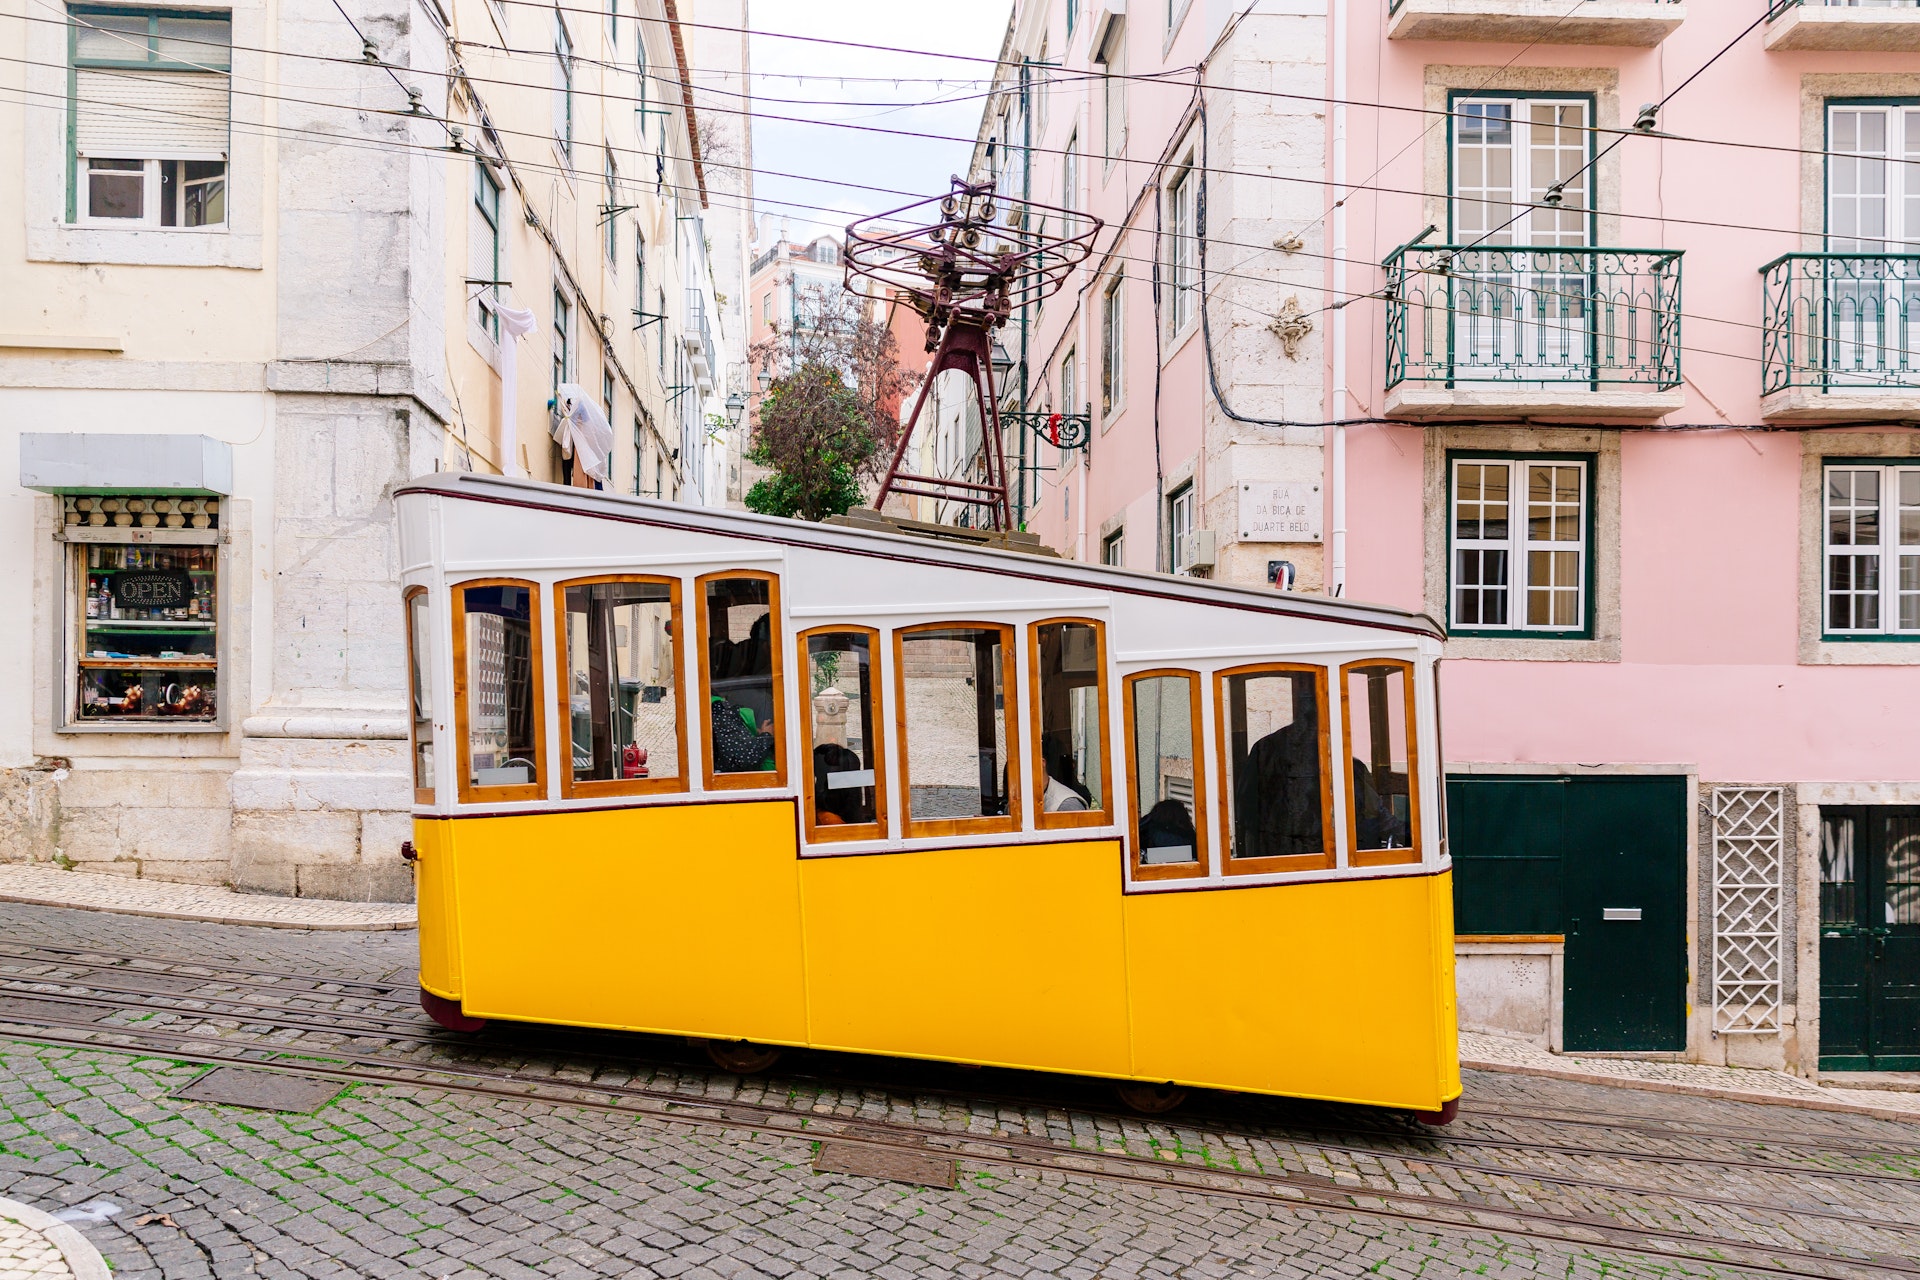  Det bedste tidspunkt at besøge Lissabon, Portugal